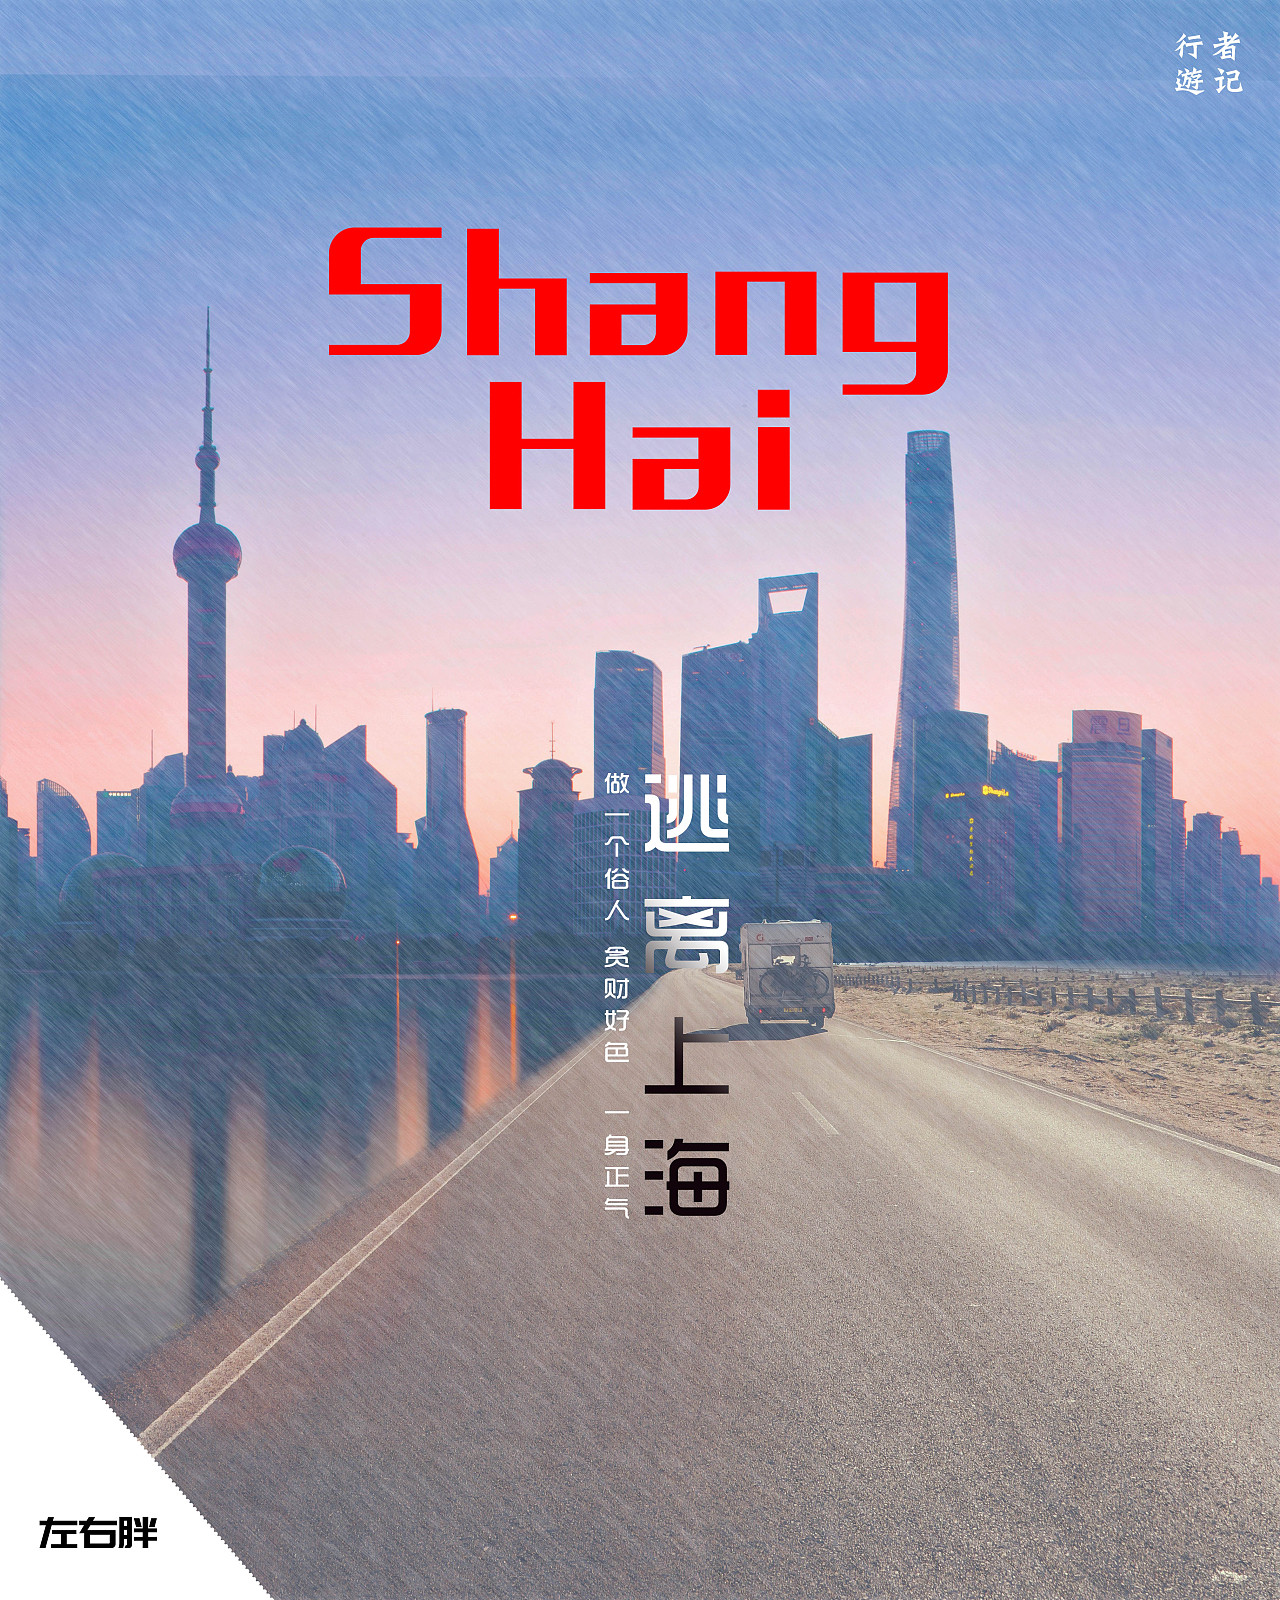 上海海报素材图片下载-素材编号14569758-素材天下图库